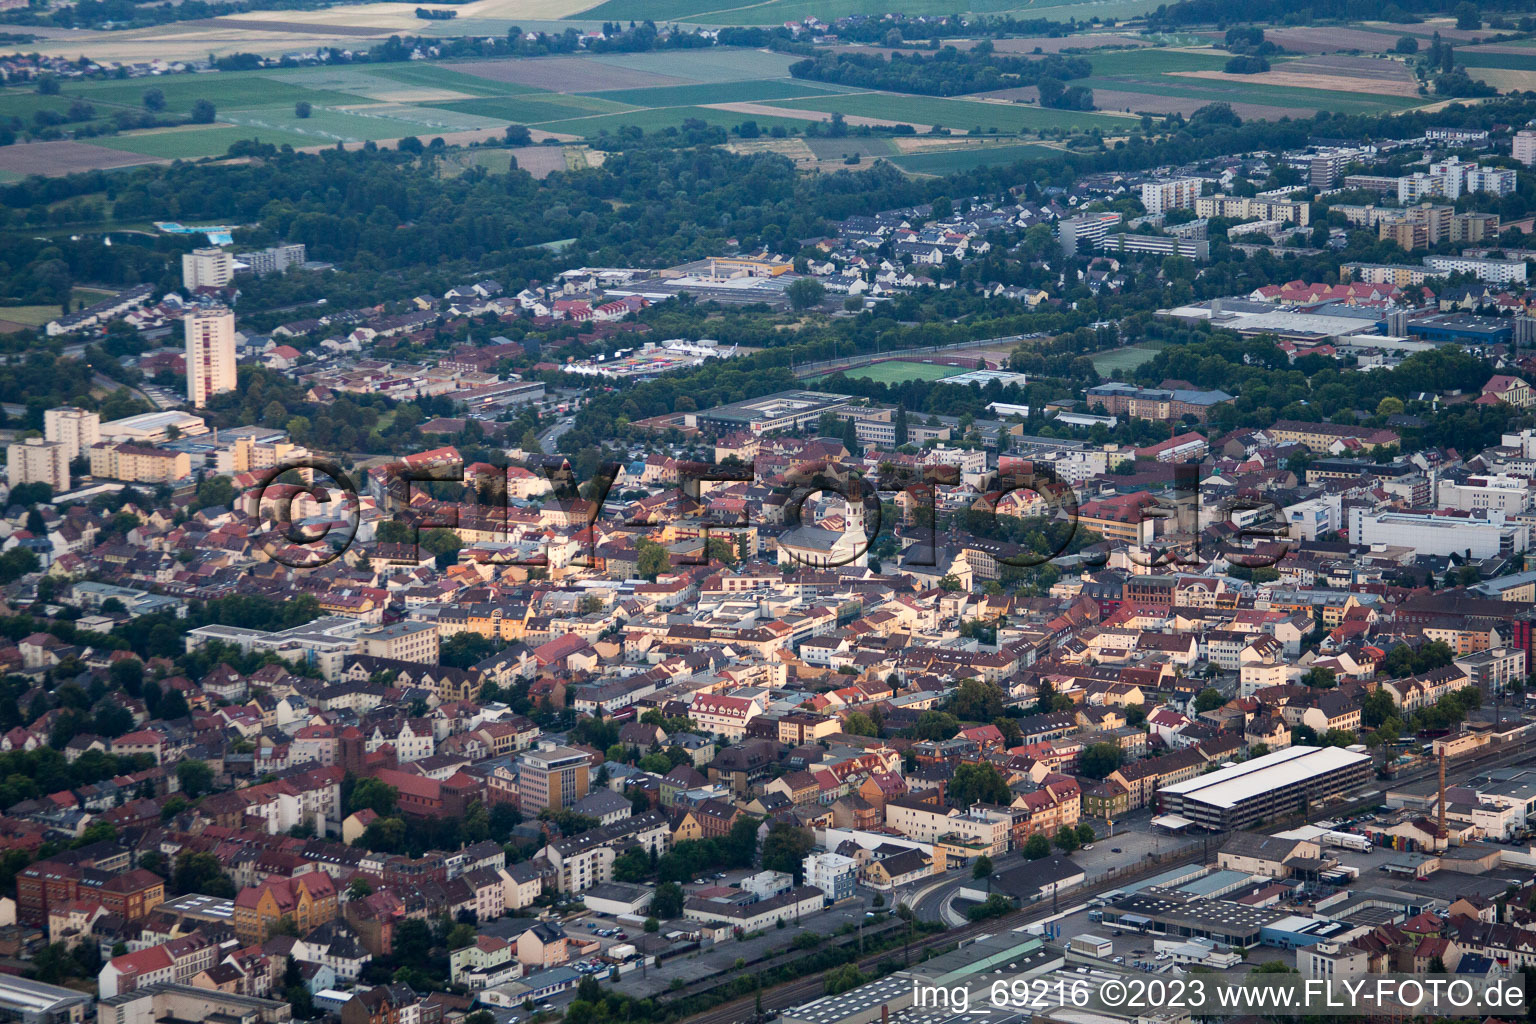 Vue aérienne de Gare centrale à Frankenthal dans le département Rhénanie-Palatinat, Allemagne